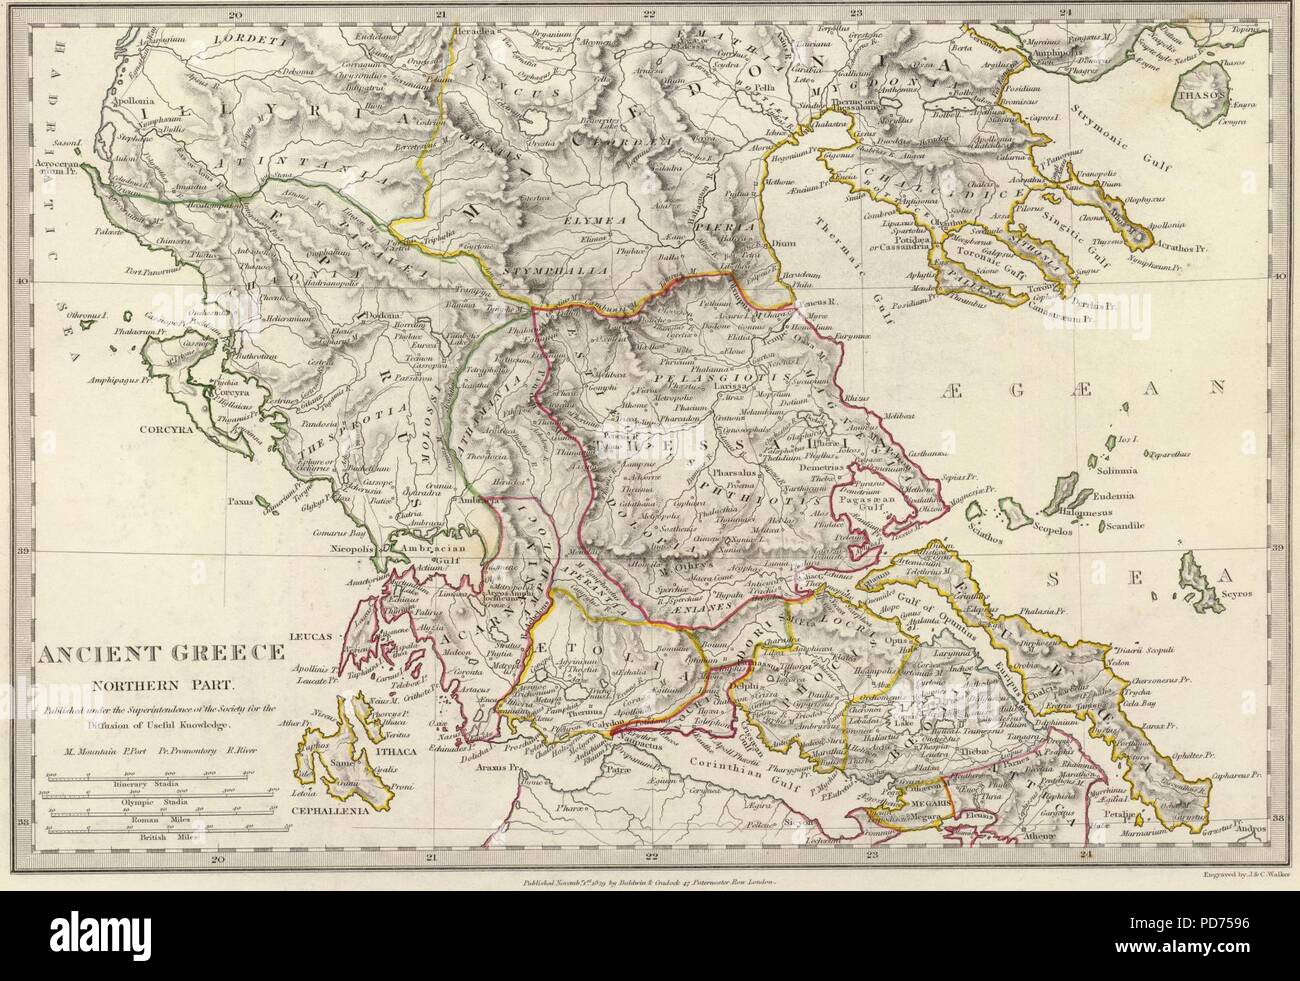 Antica Grecia Settentrionale Mappa. Foto Stock